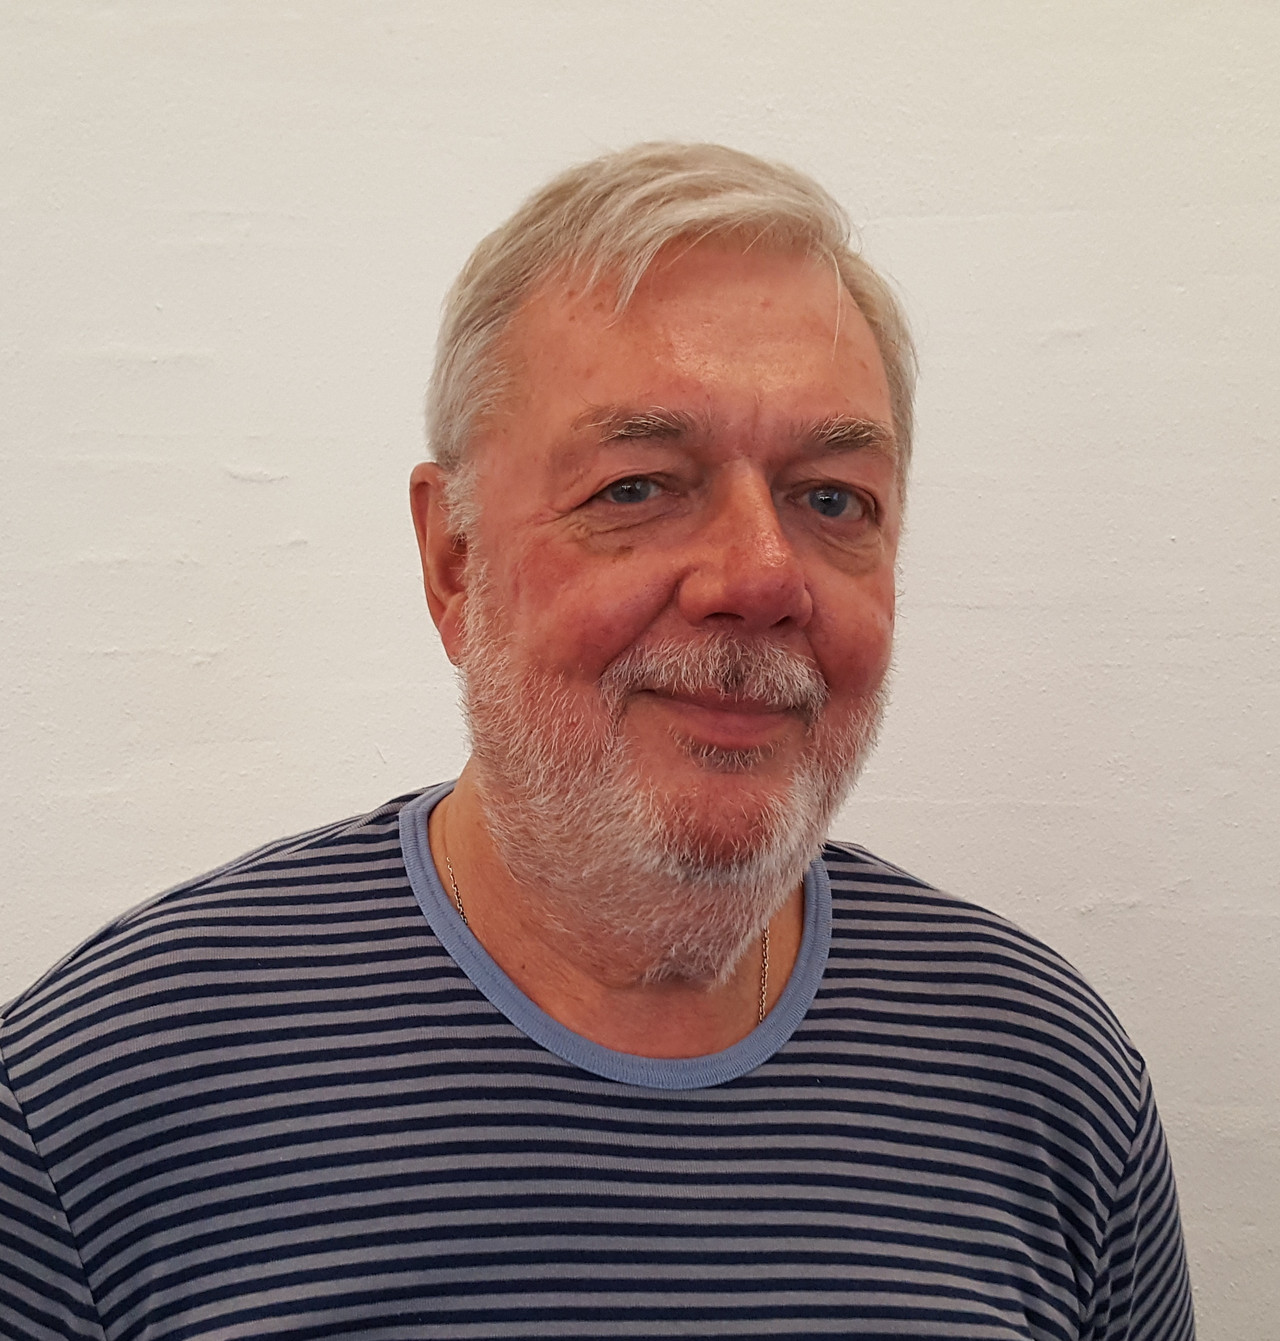 Erik Kjær har været frivillig i Ældre Sagen på Frederiksberg siden 2004 og er i dag næstformand. Han har ingen planer om at stoppe.